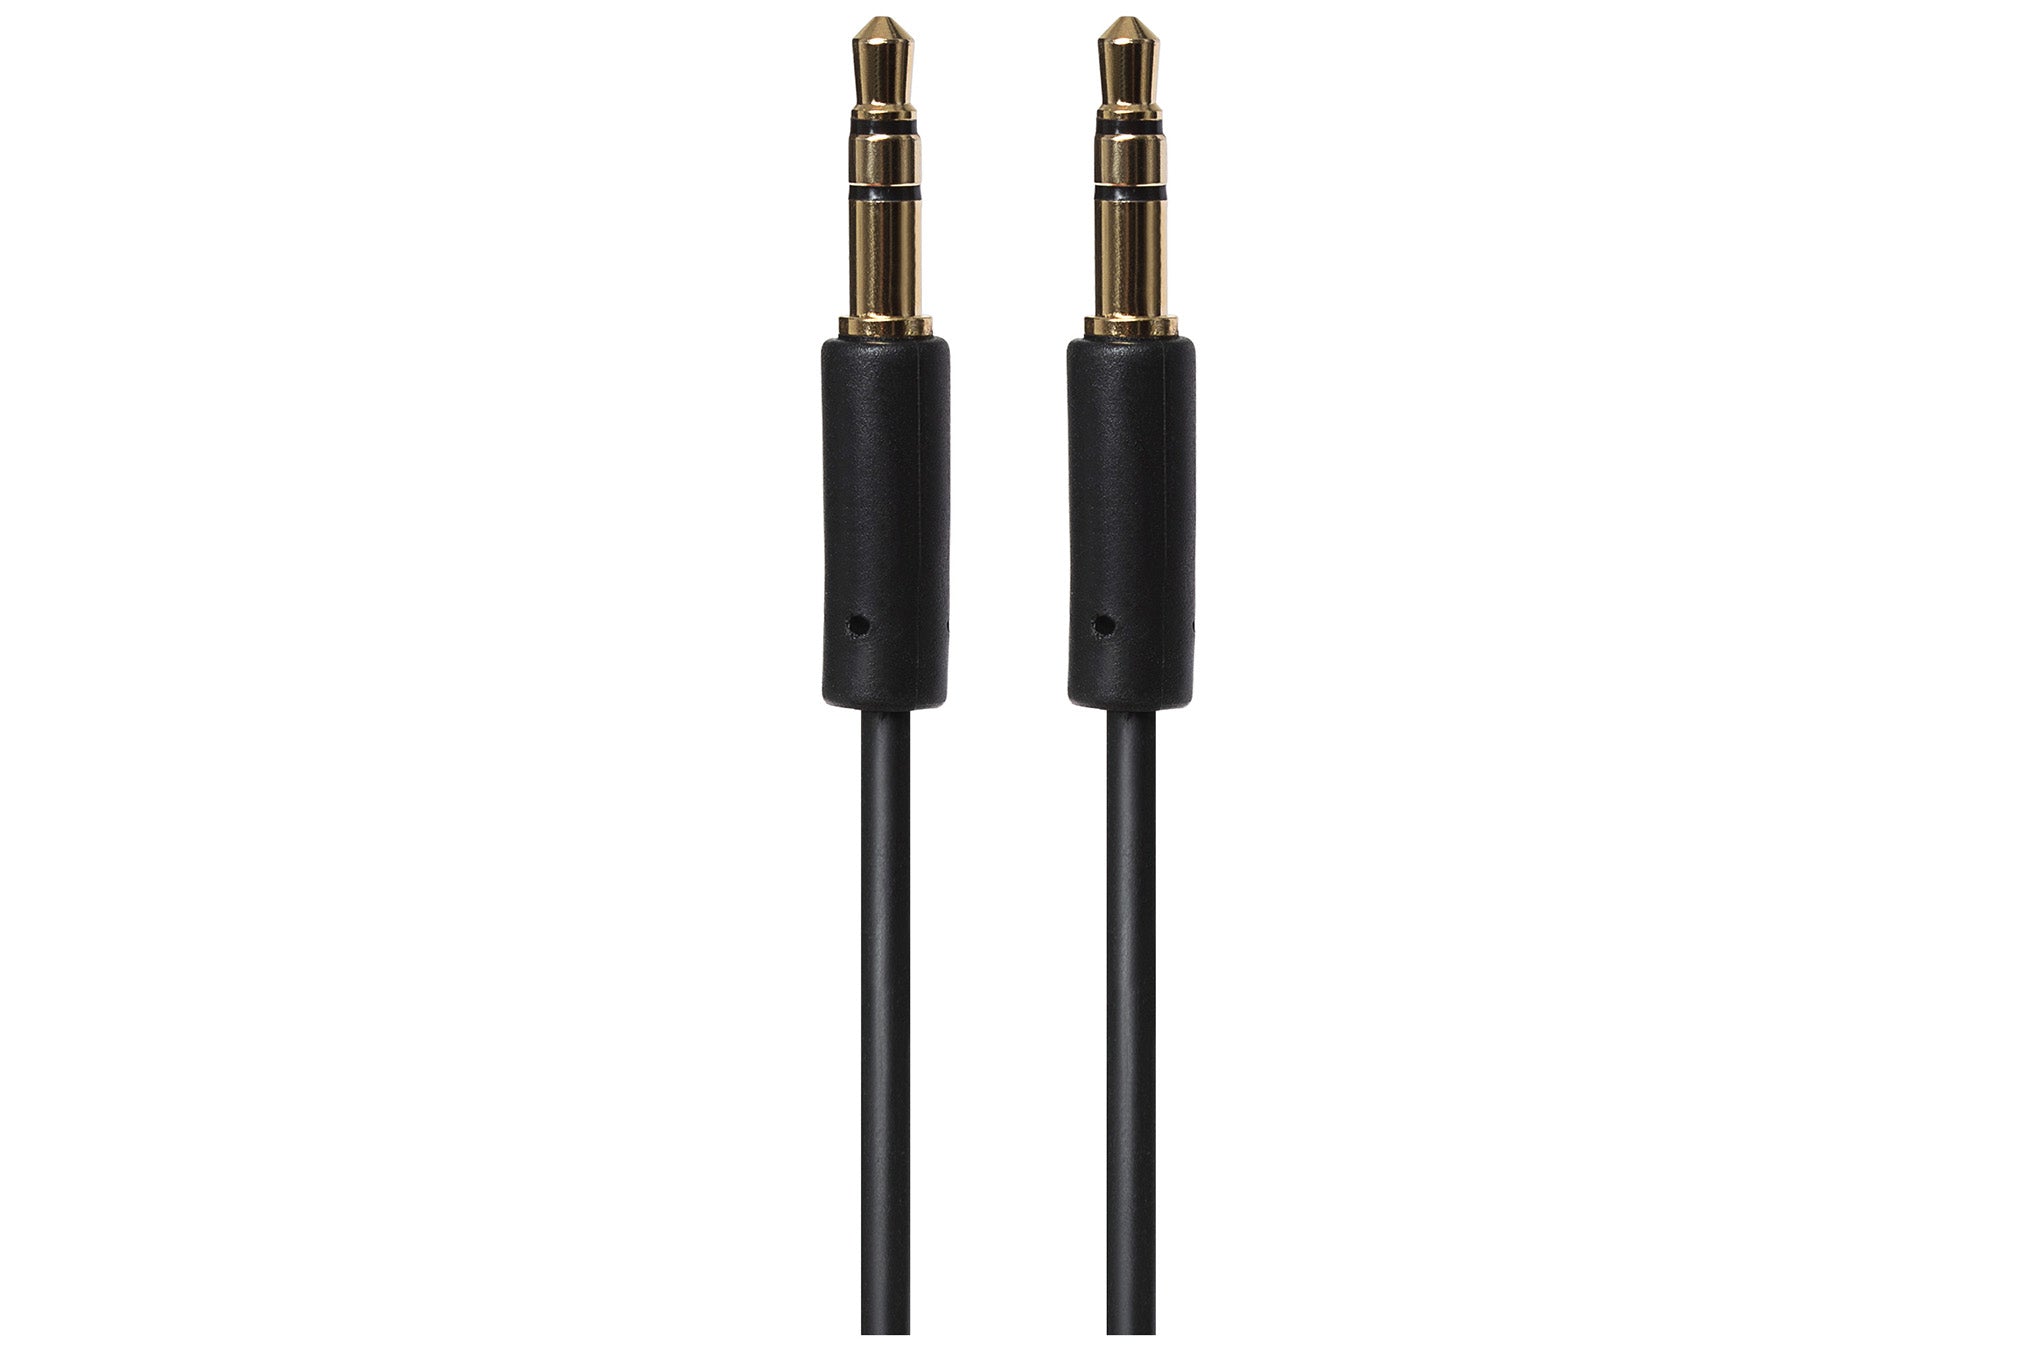 Maplin 3.5mm Aux Stereo 3-Pole Jack Plug to 3.5mm 3-Pole Jack Plug Cable - Black, 3m